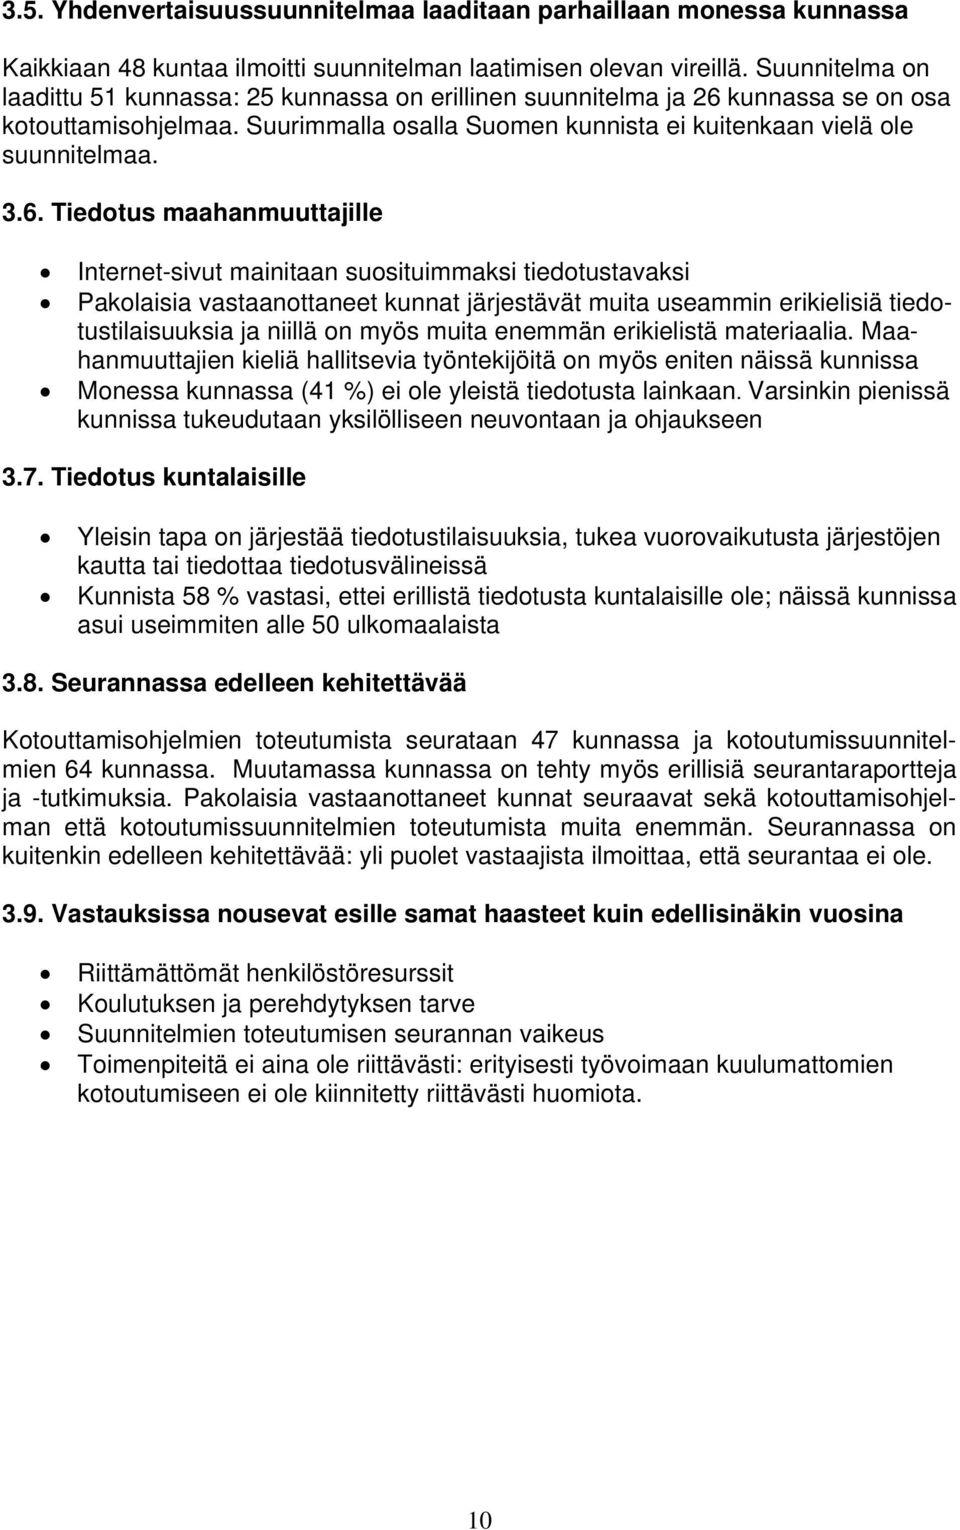 kunnassa se on osa kotouttamisohjelmaa. Suurimmalla osalla Suomen kunnista ei kuitenkaan vielä ole suunnitelmaa. 3.6.